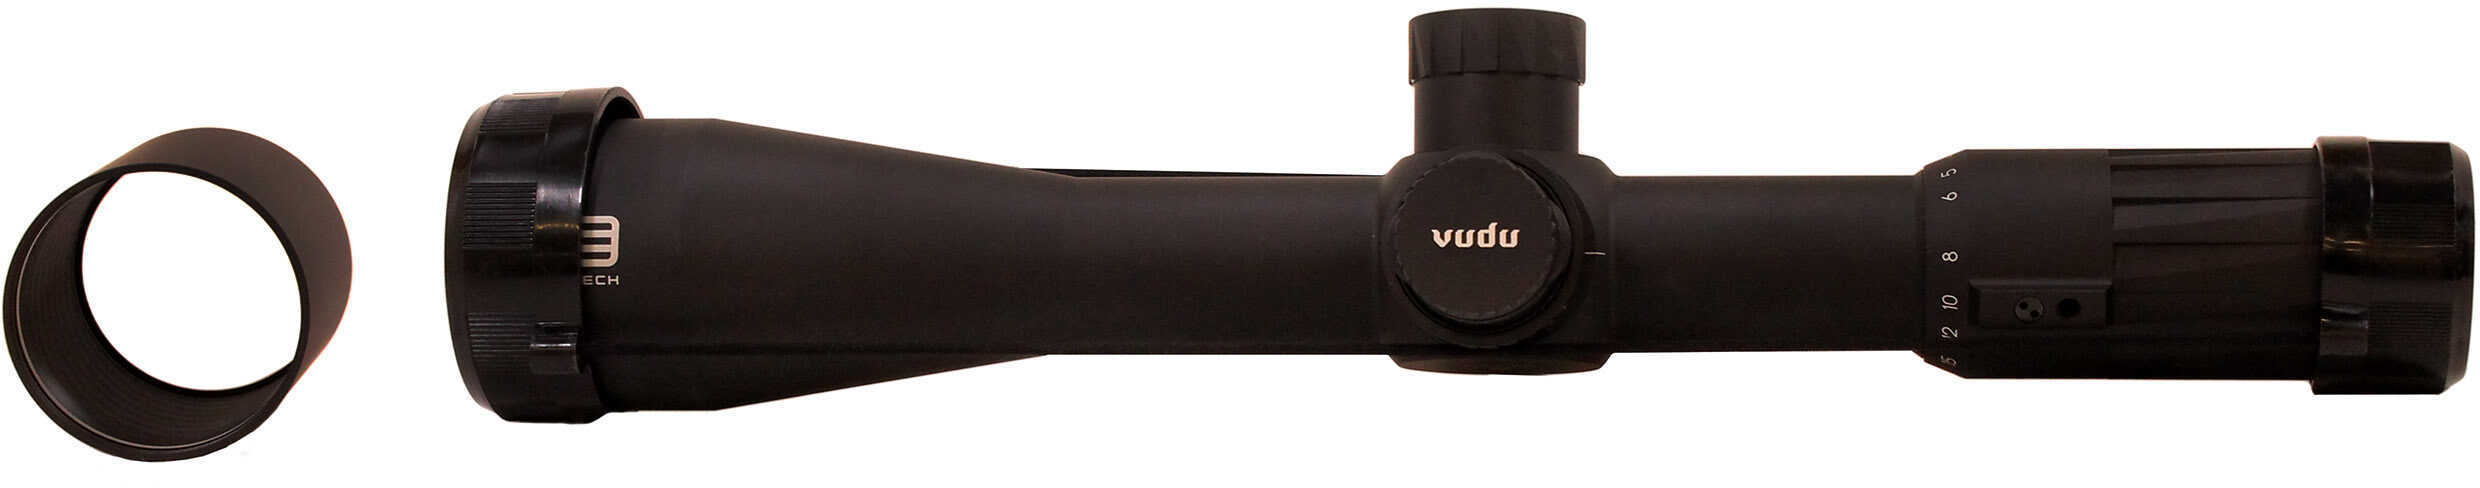 EOTECH VUDU VDU3-18SFHC1 3.5-18x50 Rifle Scope